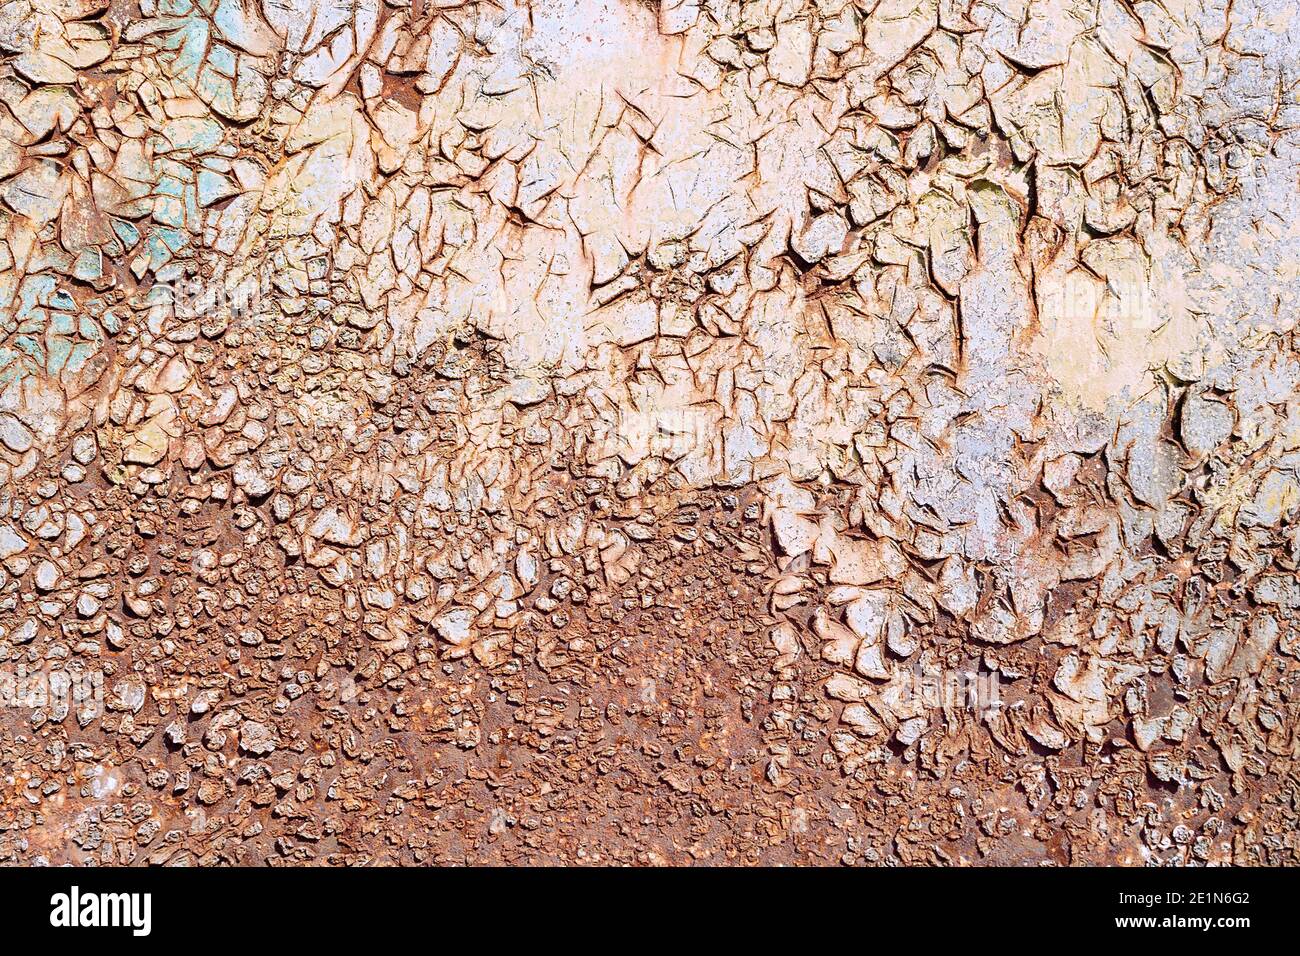 vieja superficie de metal oxidado, textura lista para su diseño Foto de stock